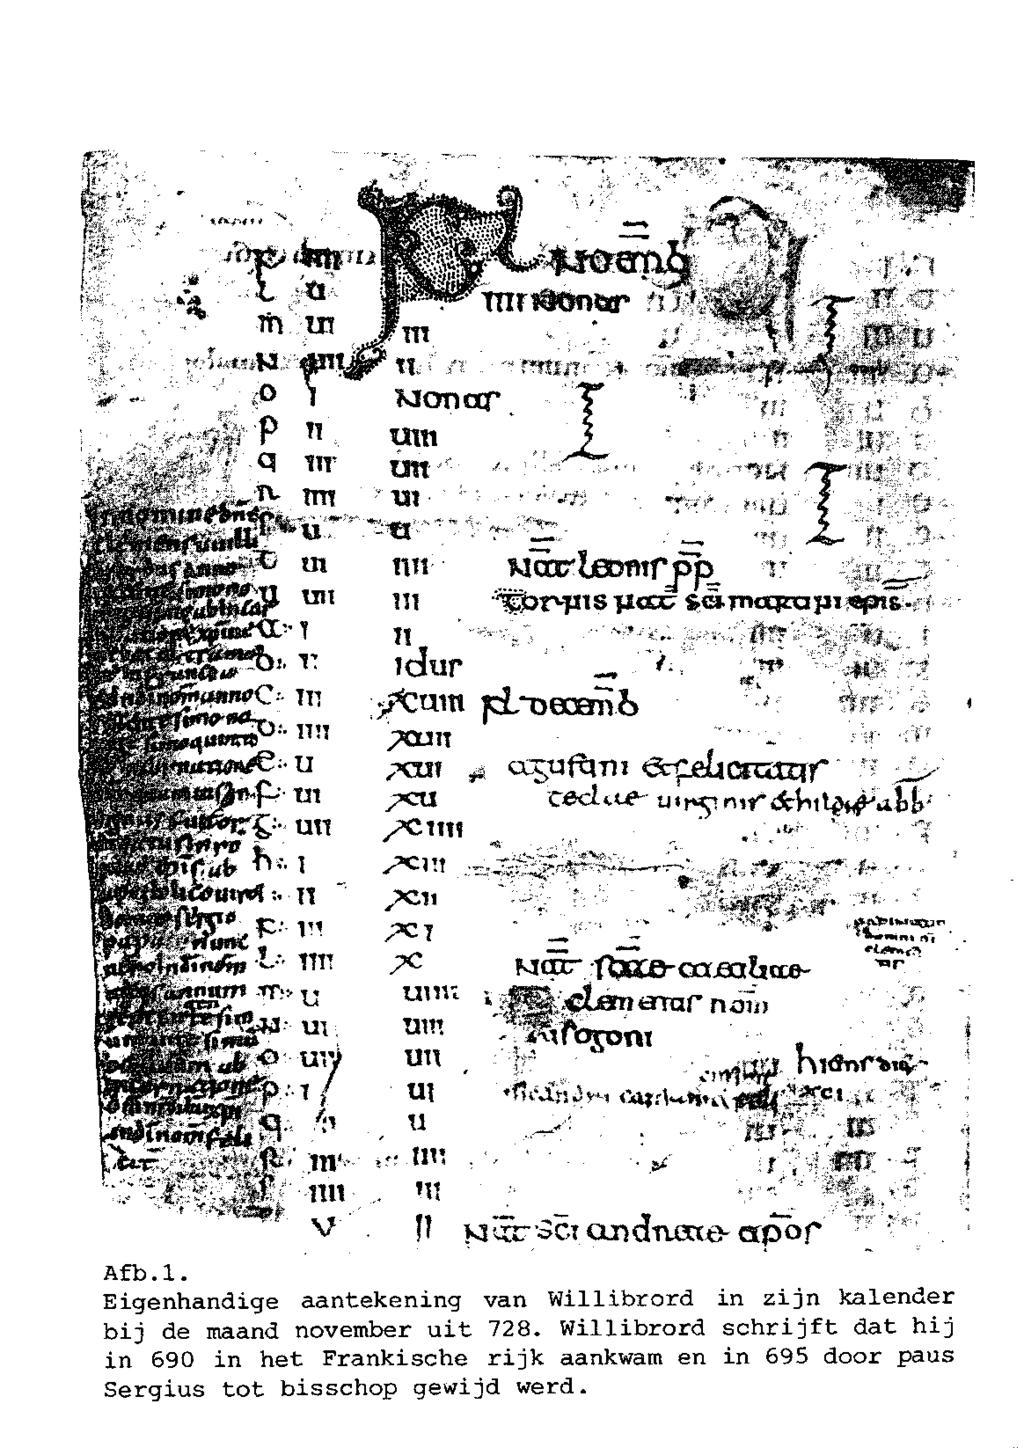 "" v *Sf mr. 'n, f. t l -J--, ' v H cind-aene- apof Af b. l. Eigenhandige aantekening van Willibrord in zijn kalender bij de maand november uit 728.